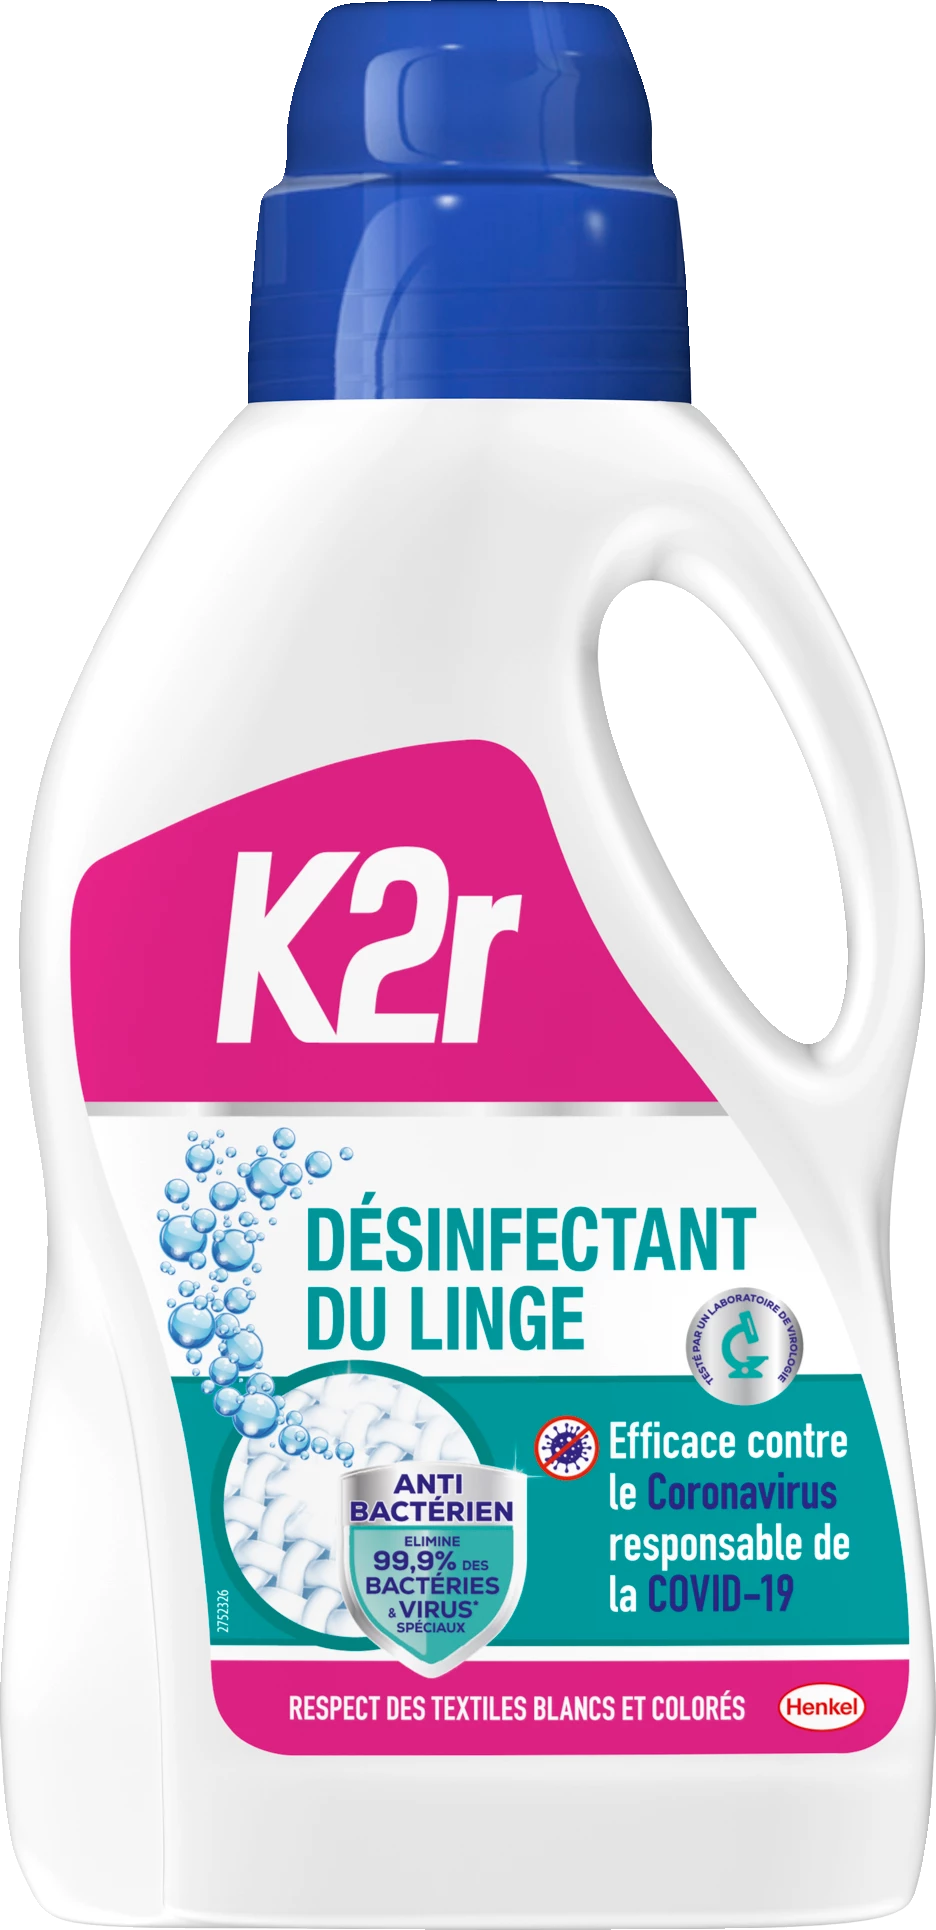 K2r Desinfectant Du Linge 1l